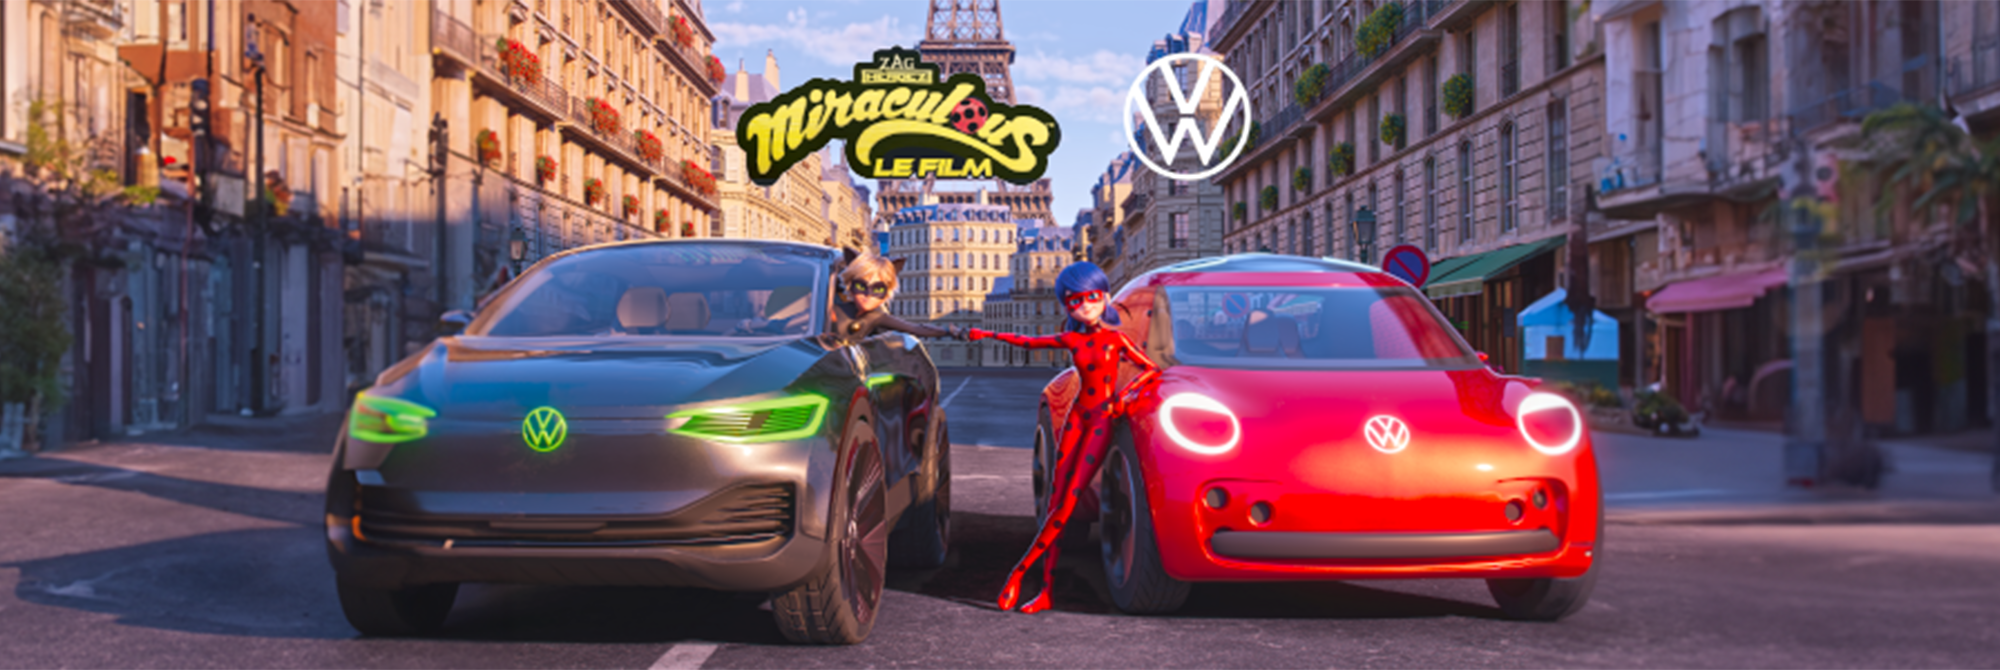 Volkswagen Paris 15 - La Magie Miraculous s'invite chez Volkswagen